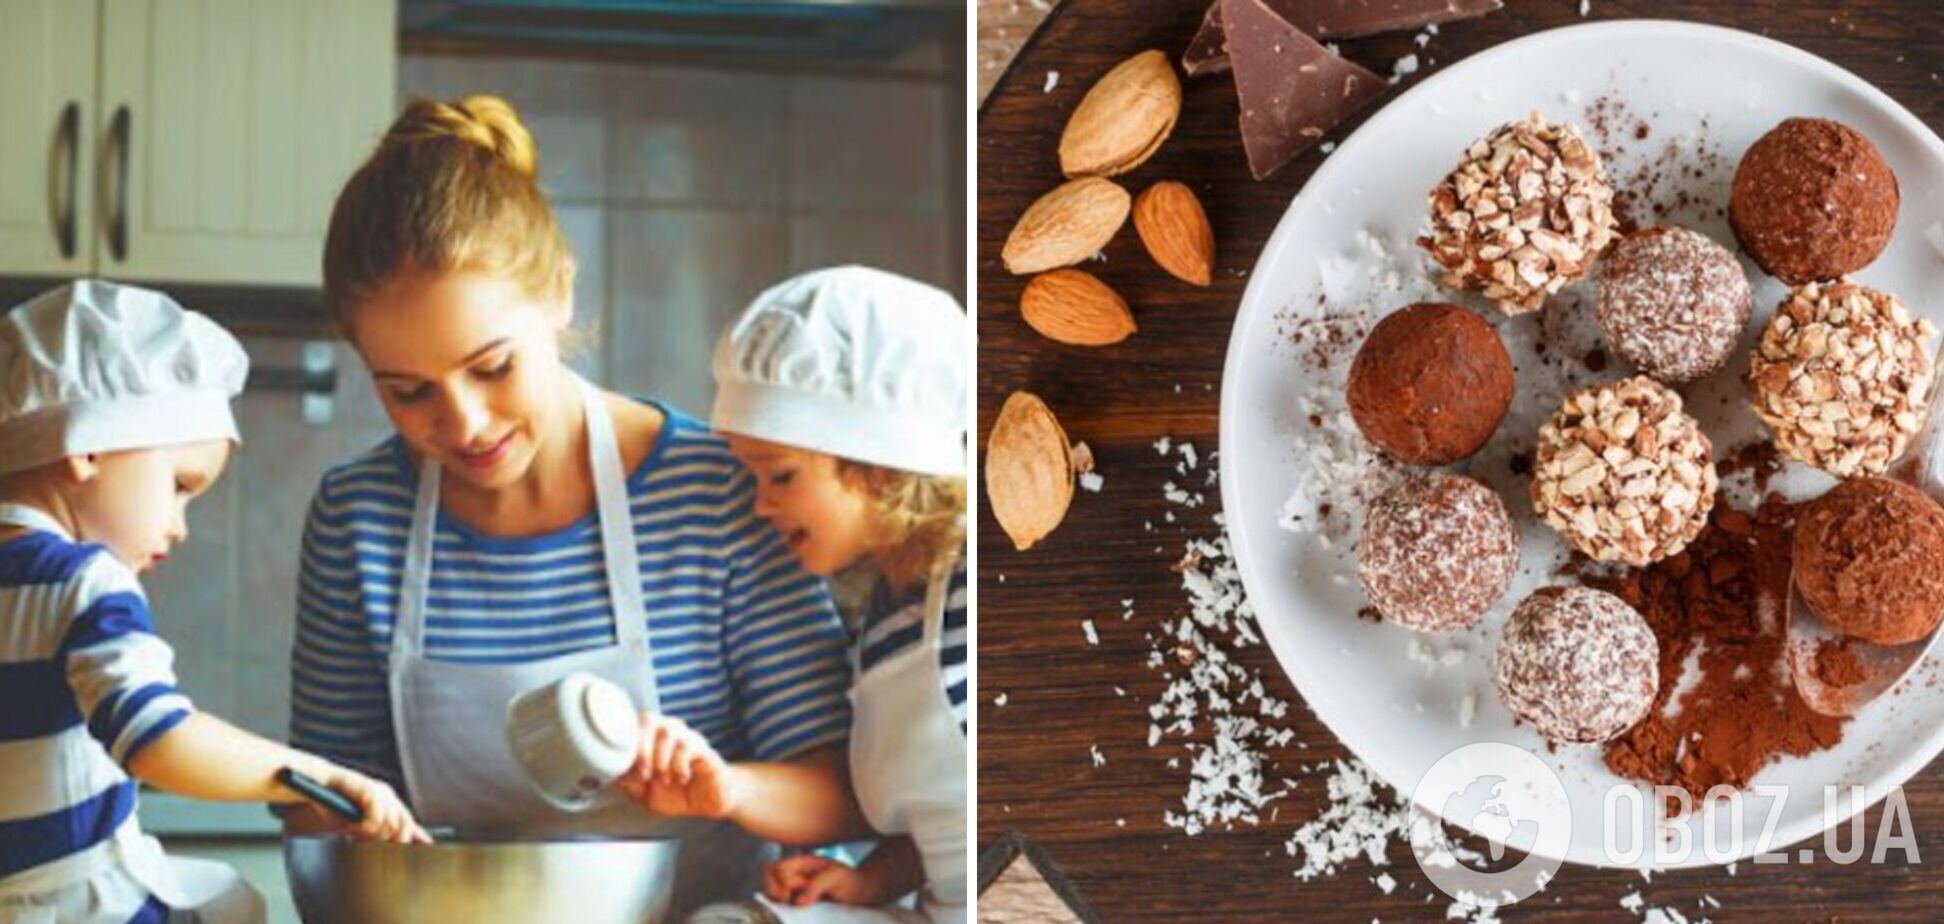 Конфеты 'Снежный миндаль': как приготовить полезную альтернативу привычным десертам